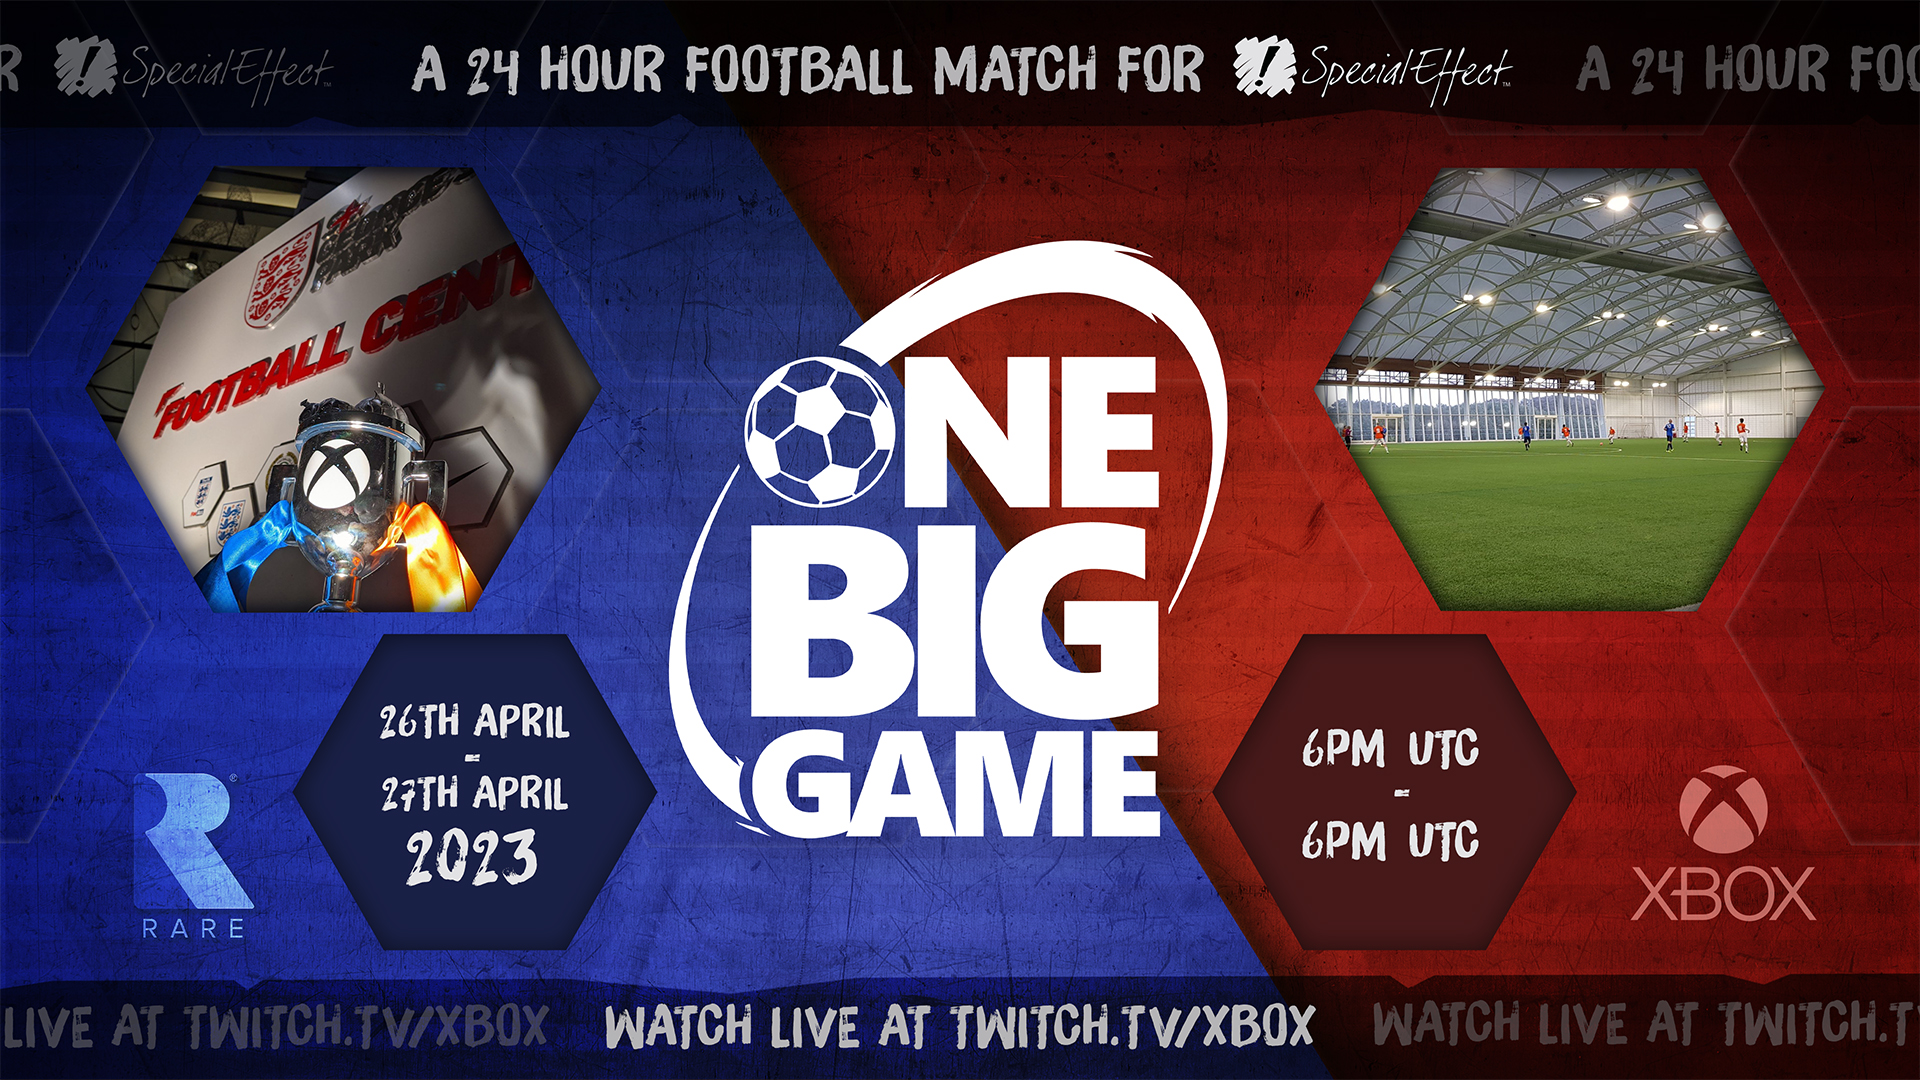 One Big Game: UK Game Studios s'attaque à un match de football de 24 heures pour SpecialEffect